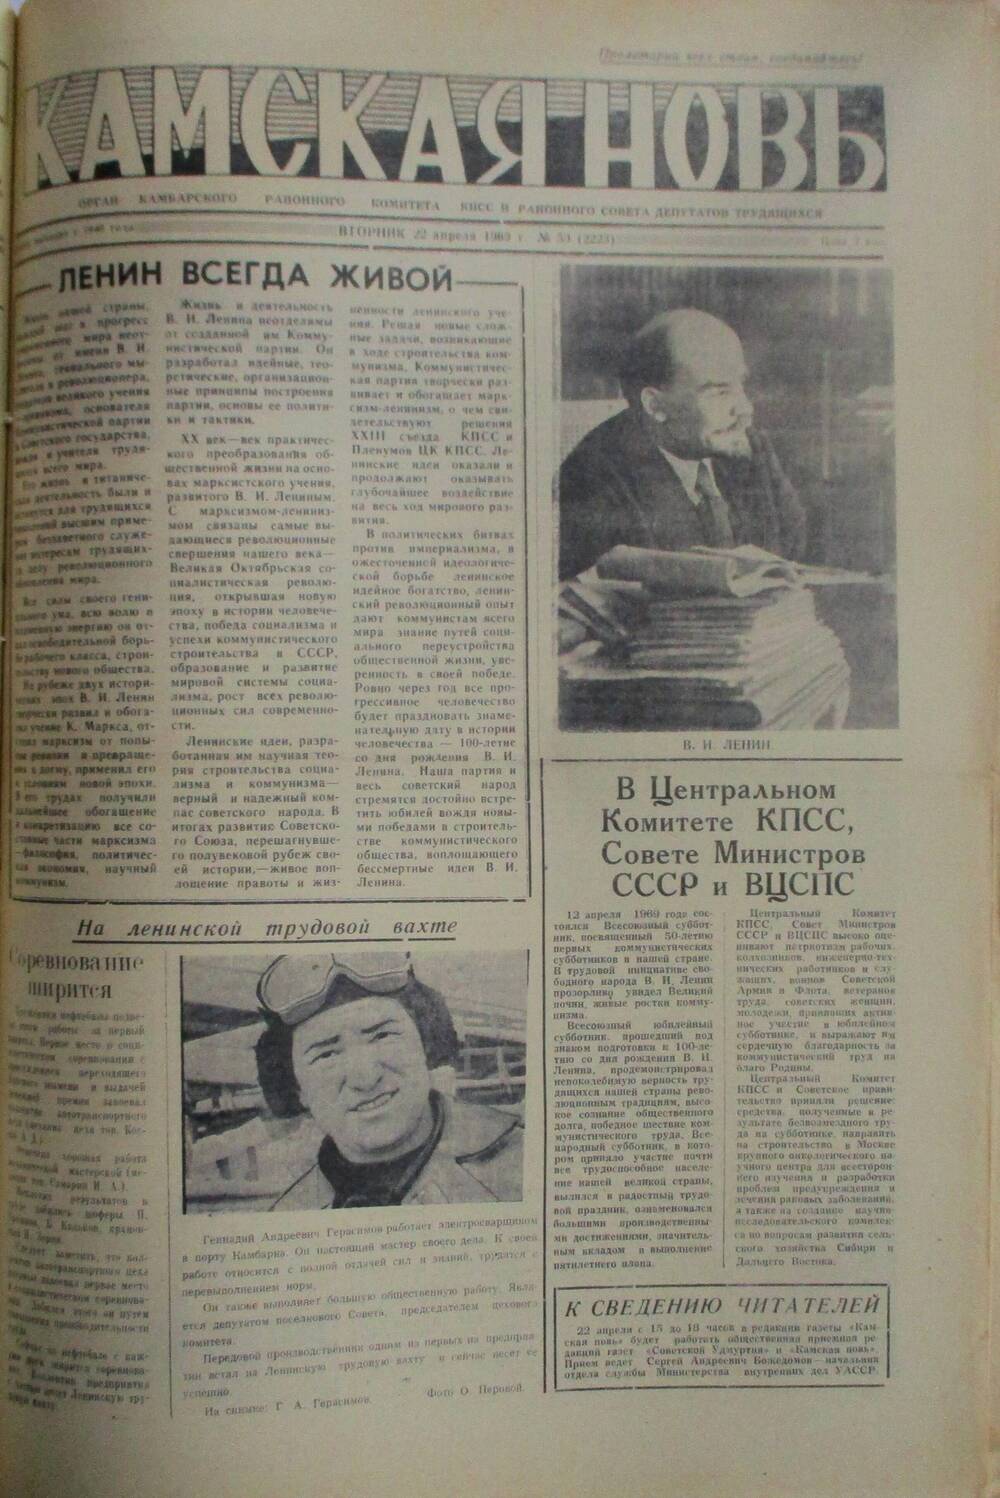 Газеты Камская новь за 1969 год, орган Камбарского райсовета и  РККПСС, с №1 по №66, с №68 по №156. №50.